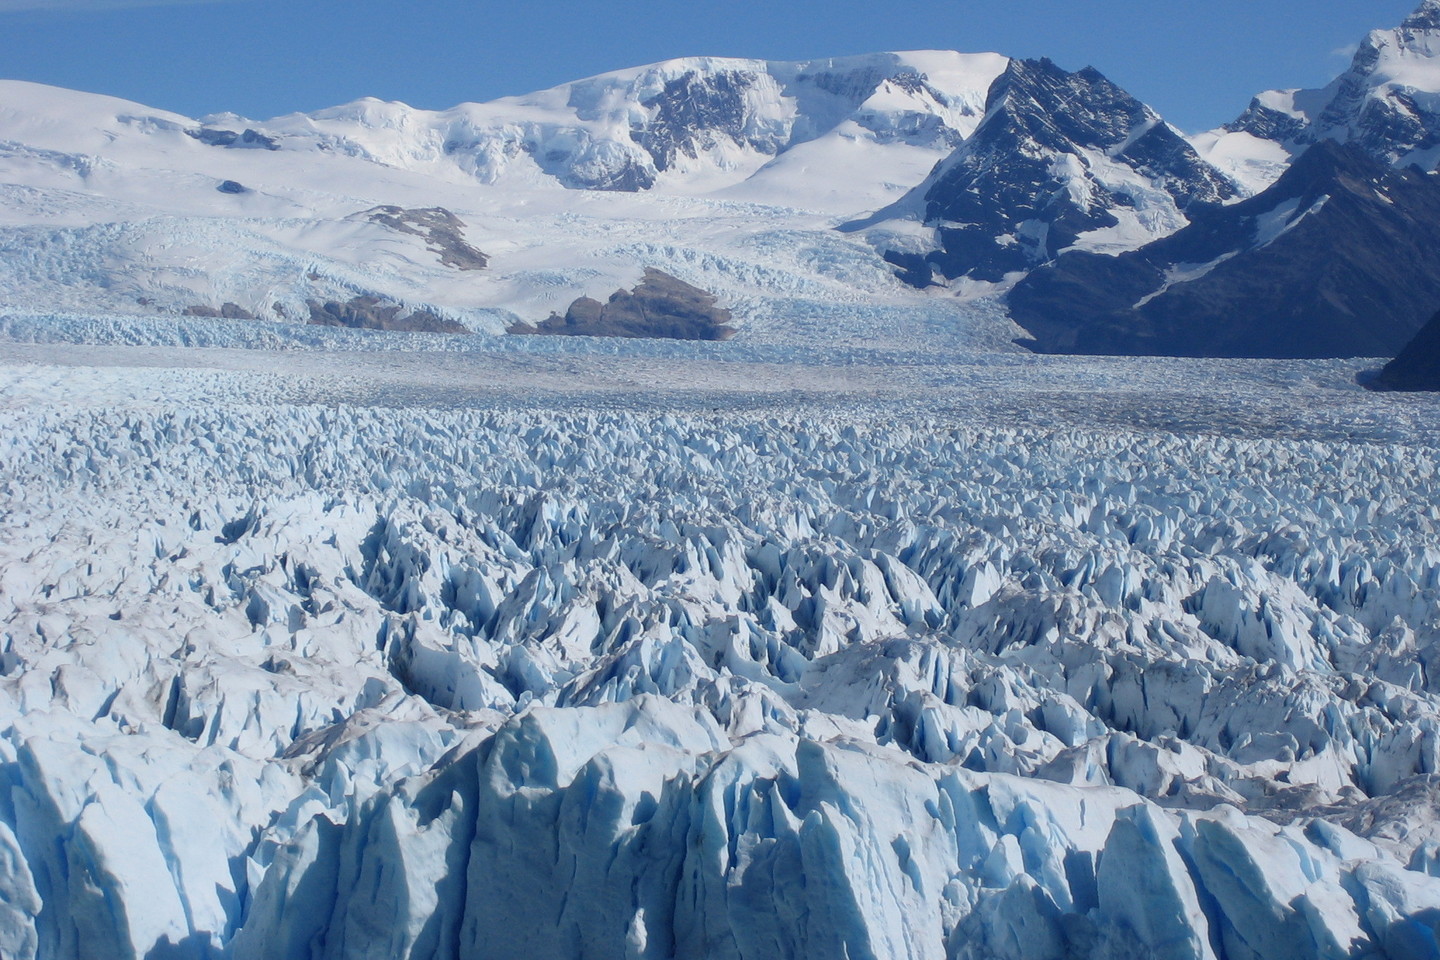  Pietų Amerikoje esantis Ledynų nacionalinis parkas - vienas didžiausių pasaulyje.<br> Wikipedia nuotr.